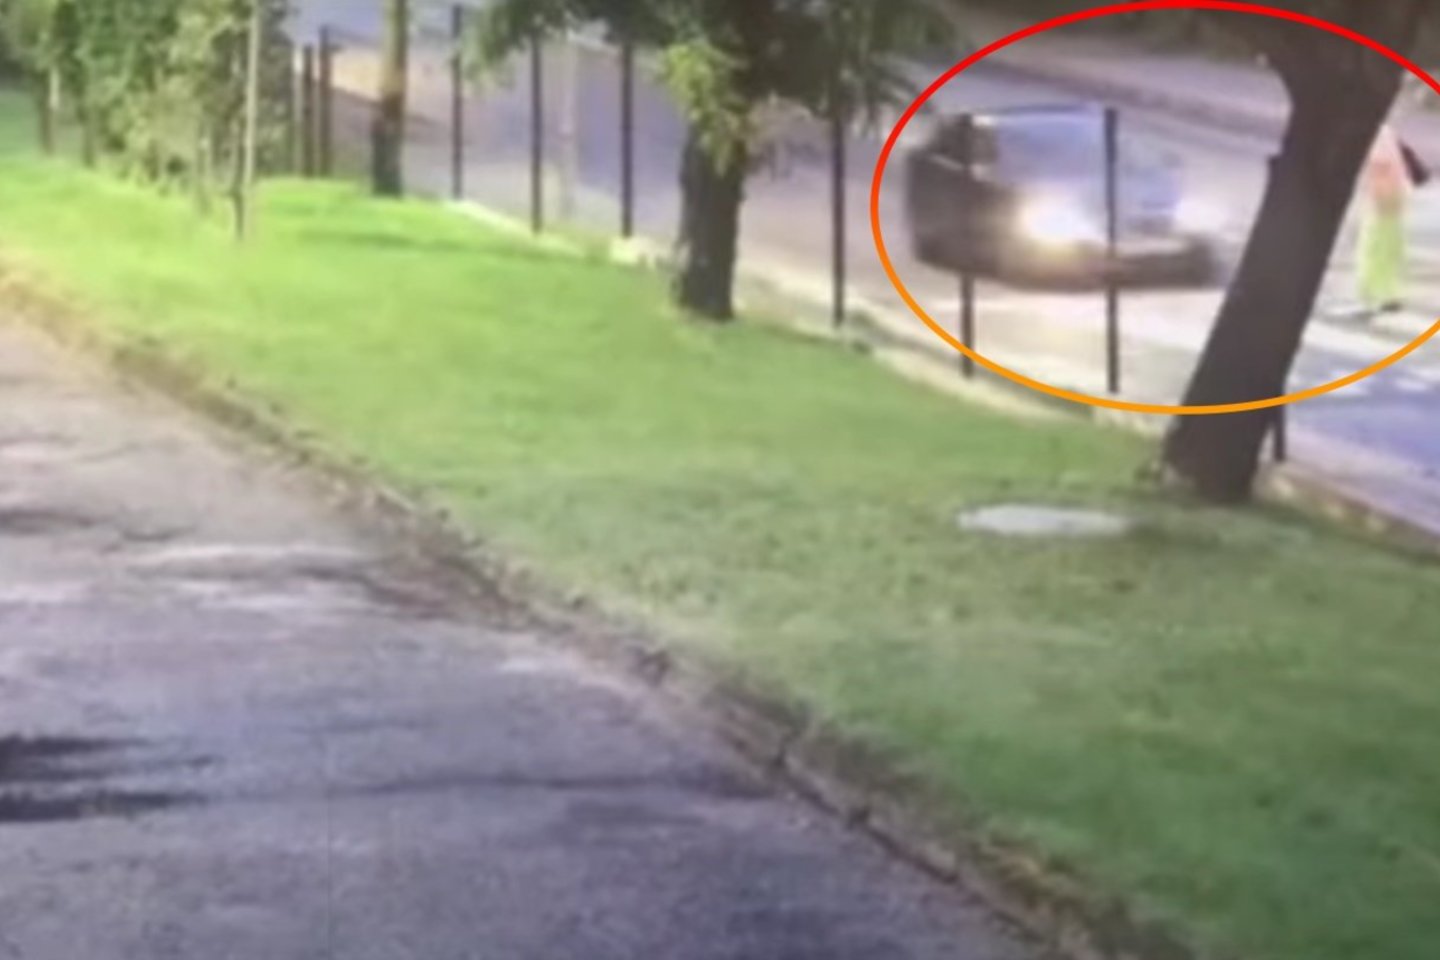  Vilniaus policija surado moterį partrenkusį ir pasprukusį vairuotoją.<br> Stop kadras iš vaizdo medžiagos